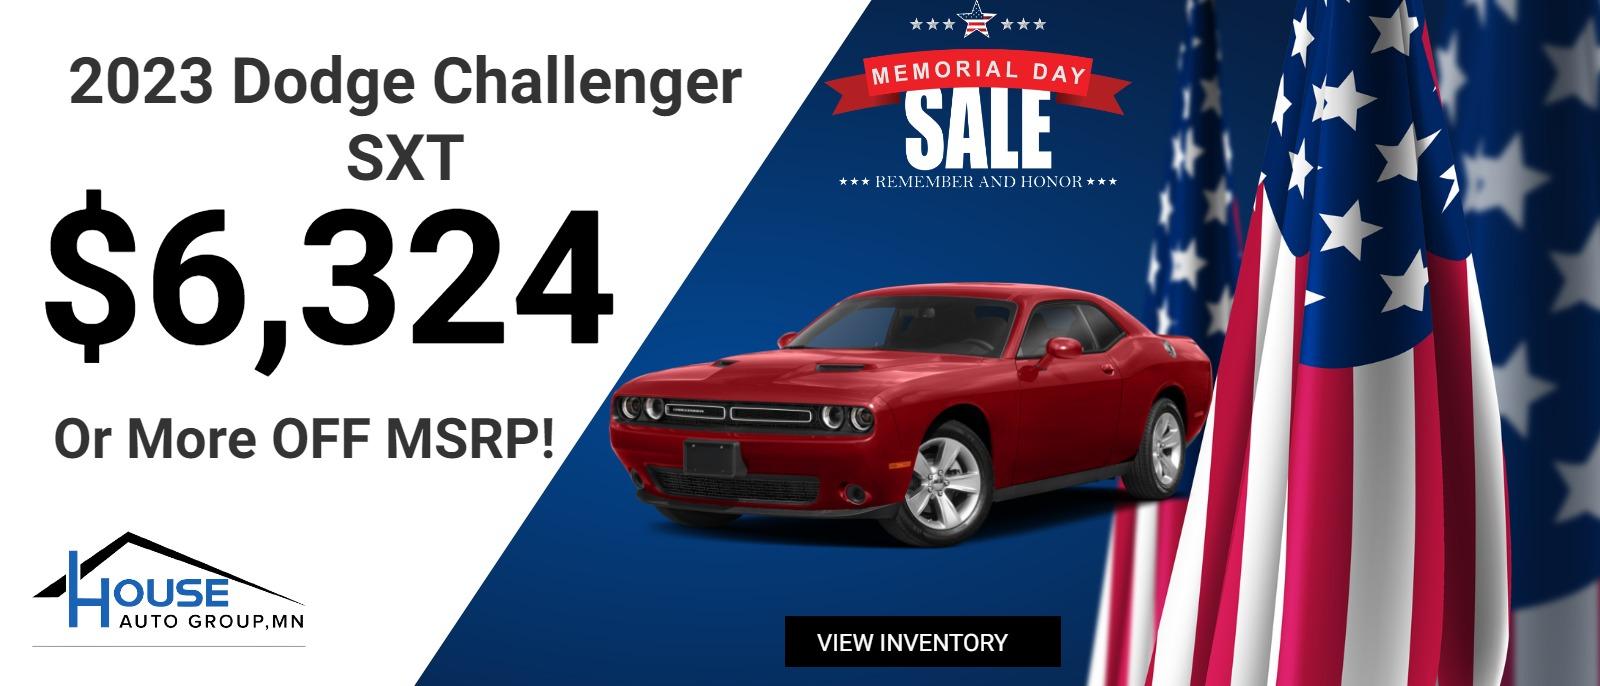 2023 Dodge Challenger SXT - $6,324 Or More Off MSRP!